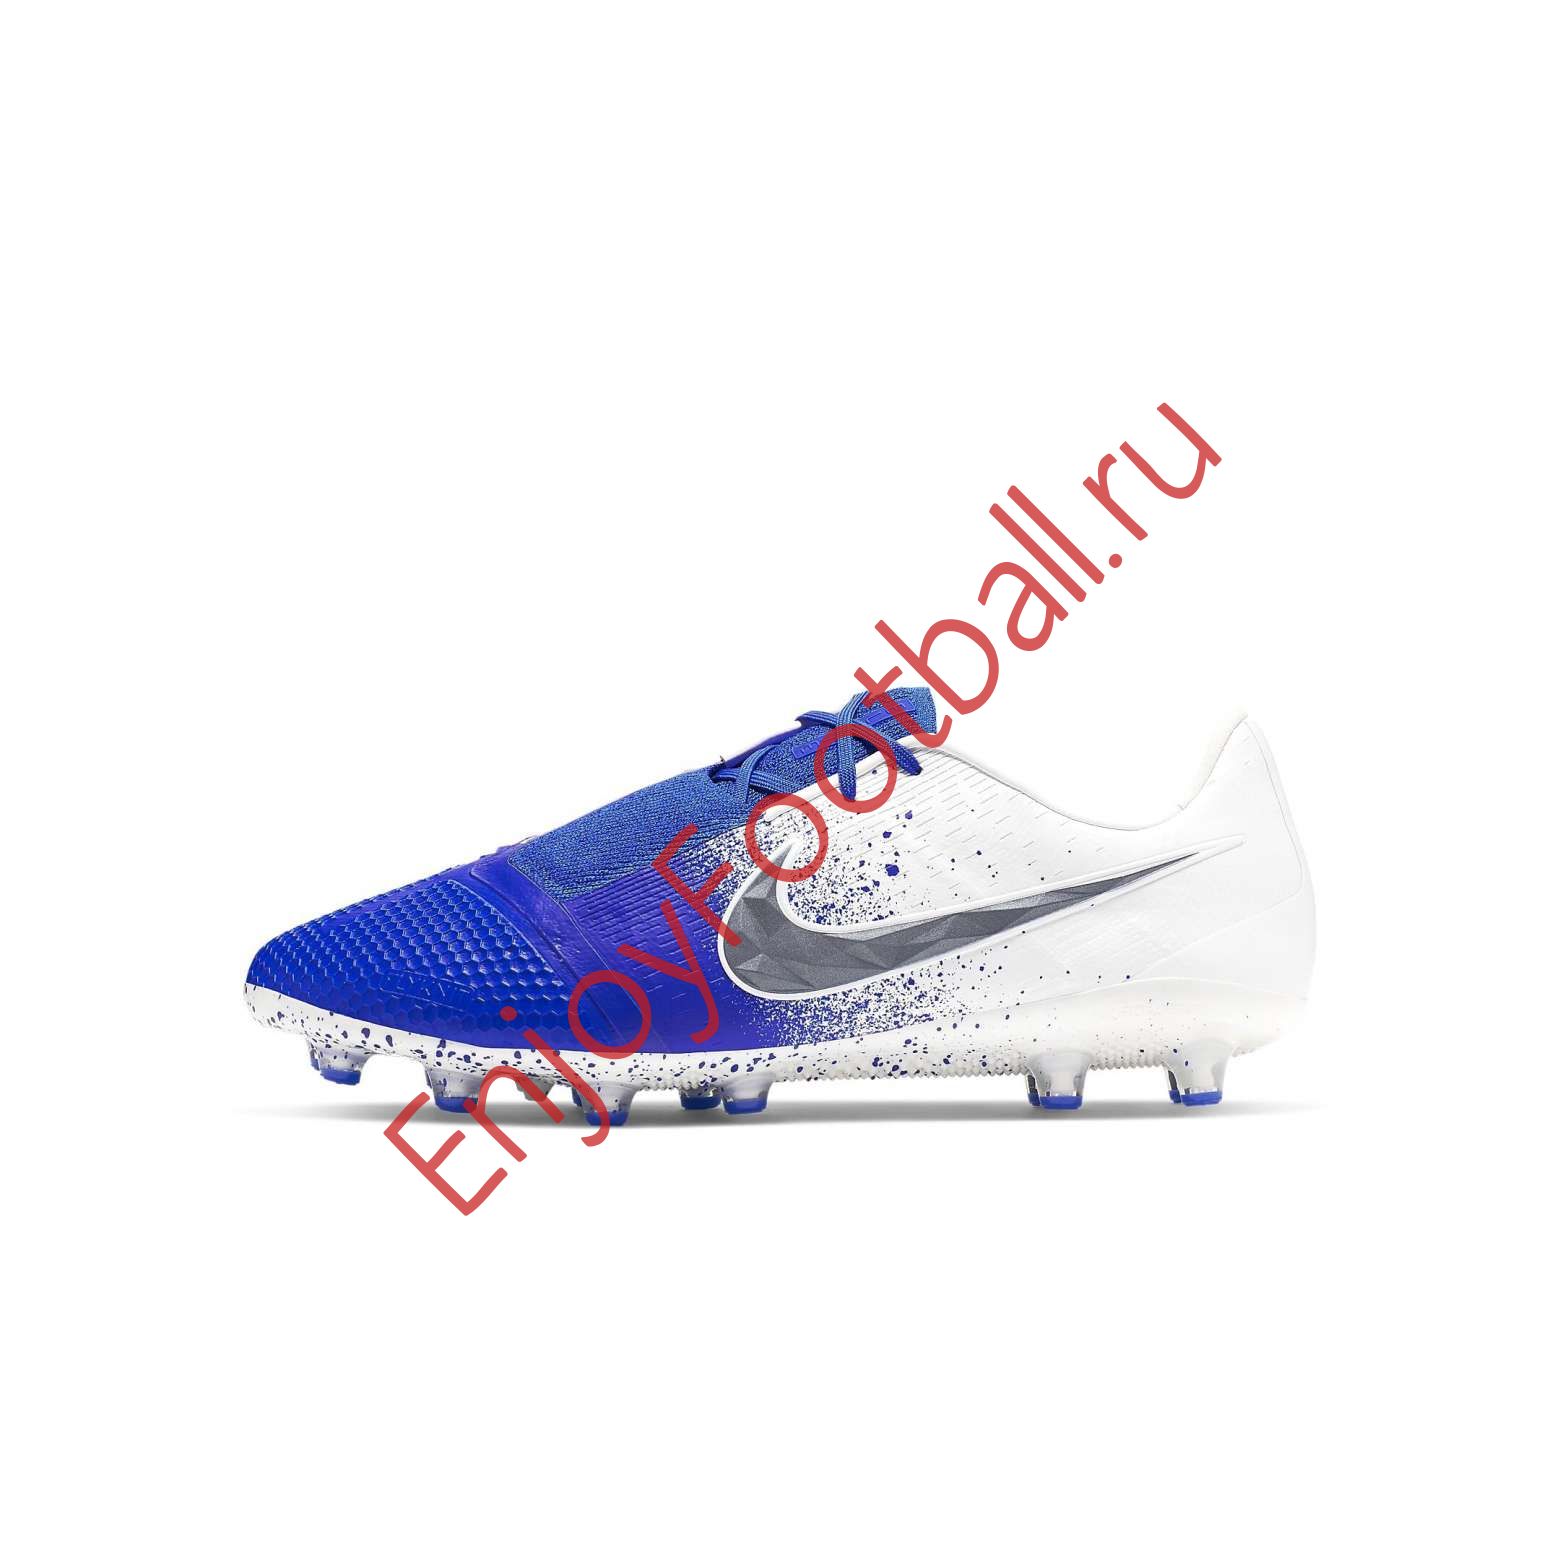 Nike Hypervenom Phantom III Elite FG Football Boots Lovell